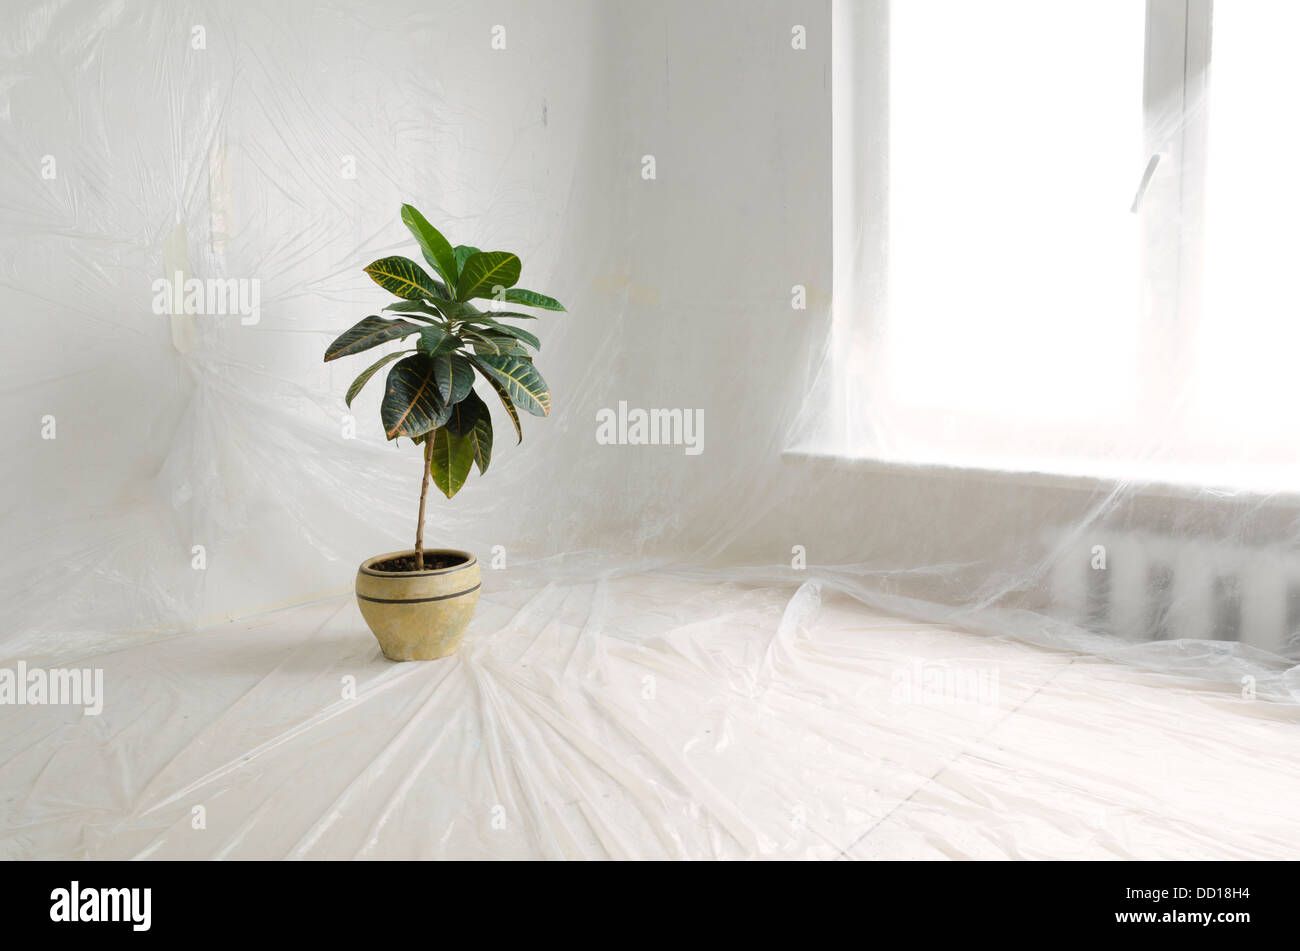 Renovierungs-Innenraum durch dünne Kunststofffolie mit Grünpflanze in großen Keramiktopf geschützt Stockfoto